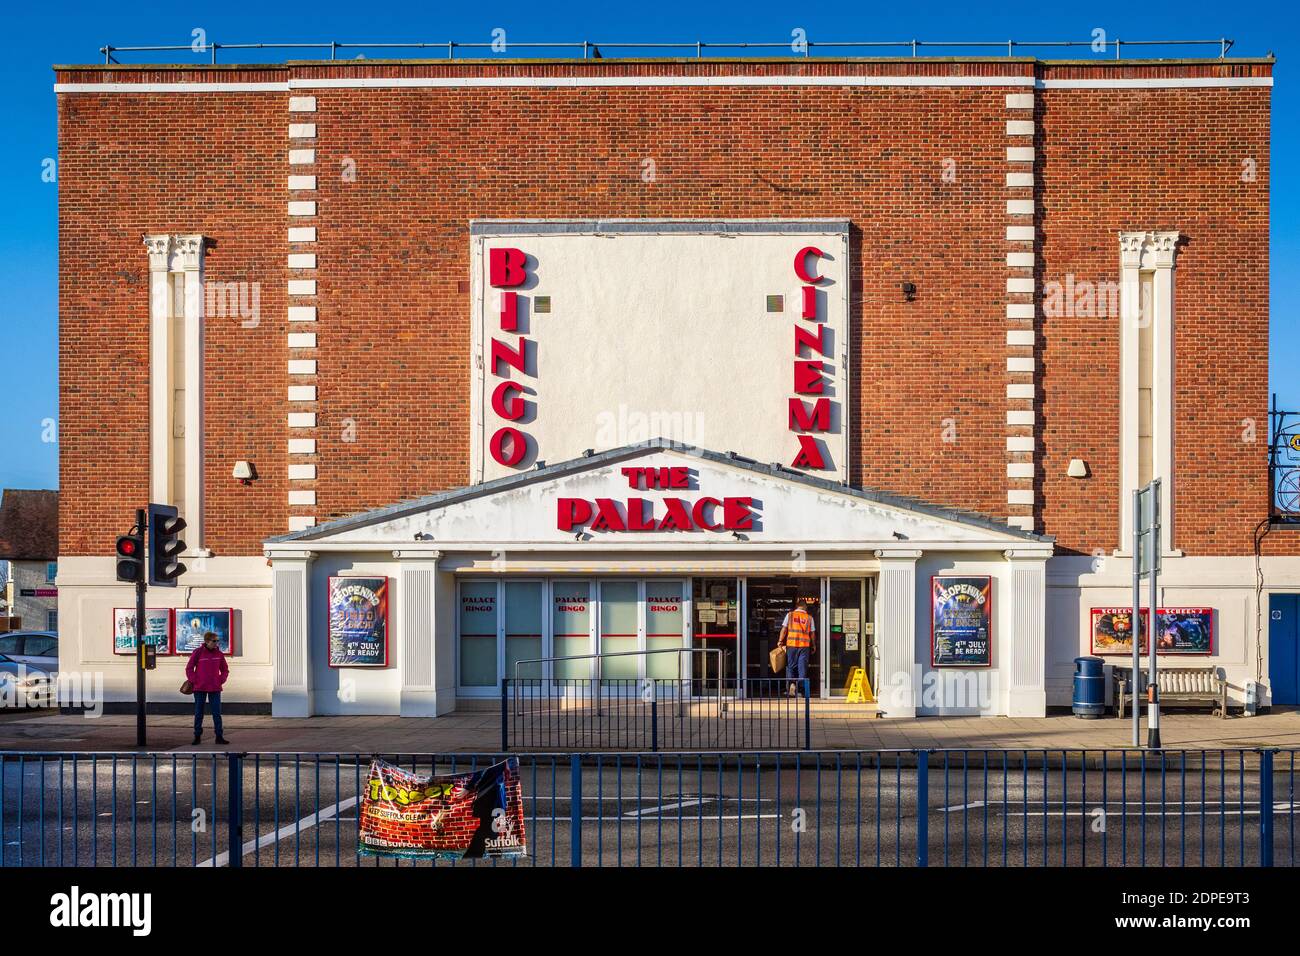 Reino Unido Bingo Hall y Cine. The Palace Bingo Hall and Cinema en Felixstowe, Suffolk, Reino Unido. Abierto en 1937. Foto de stock